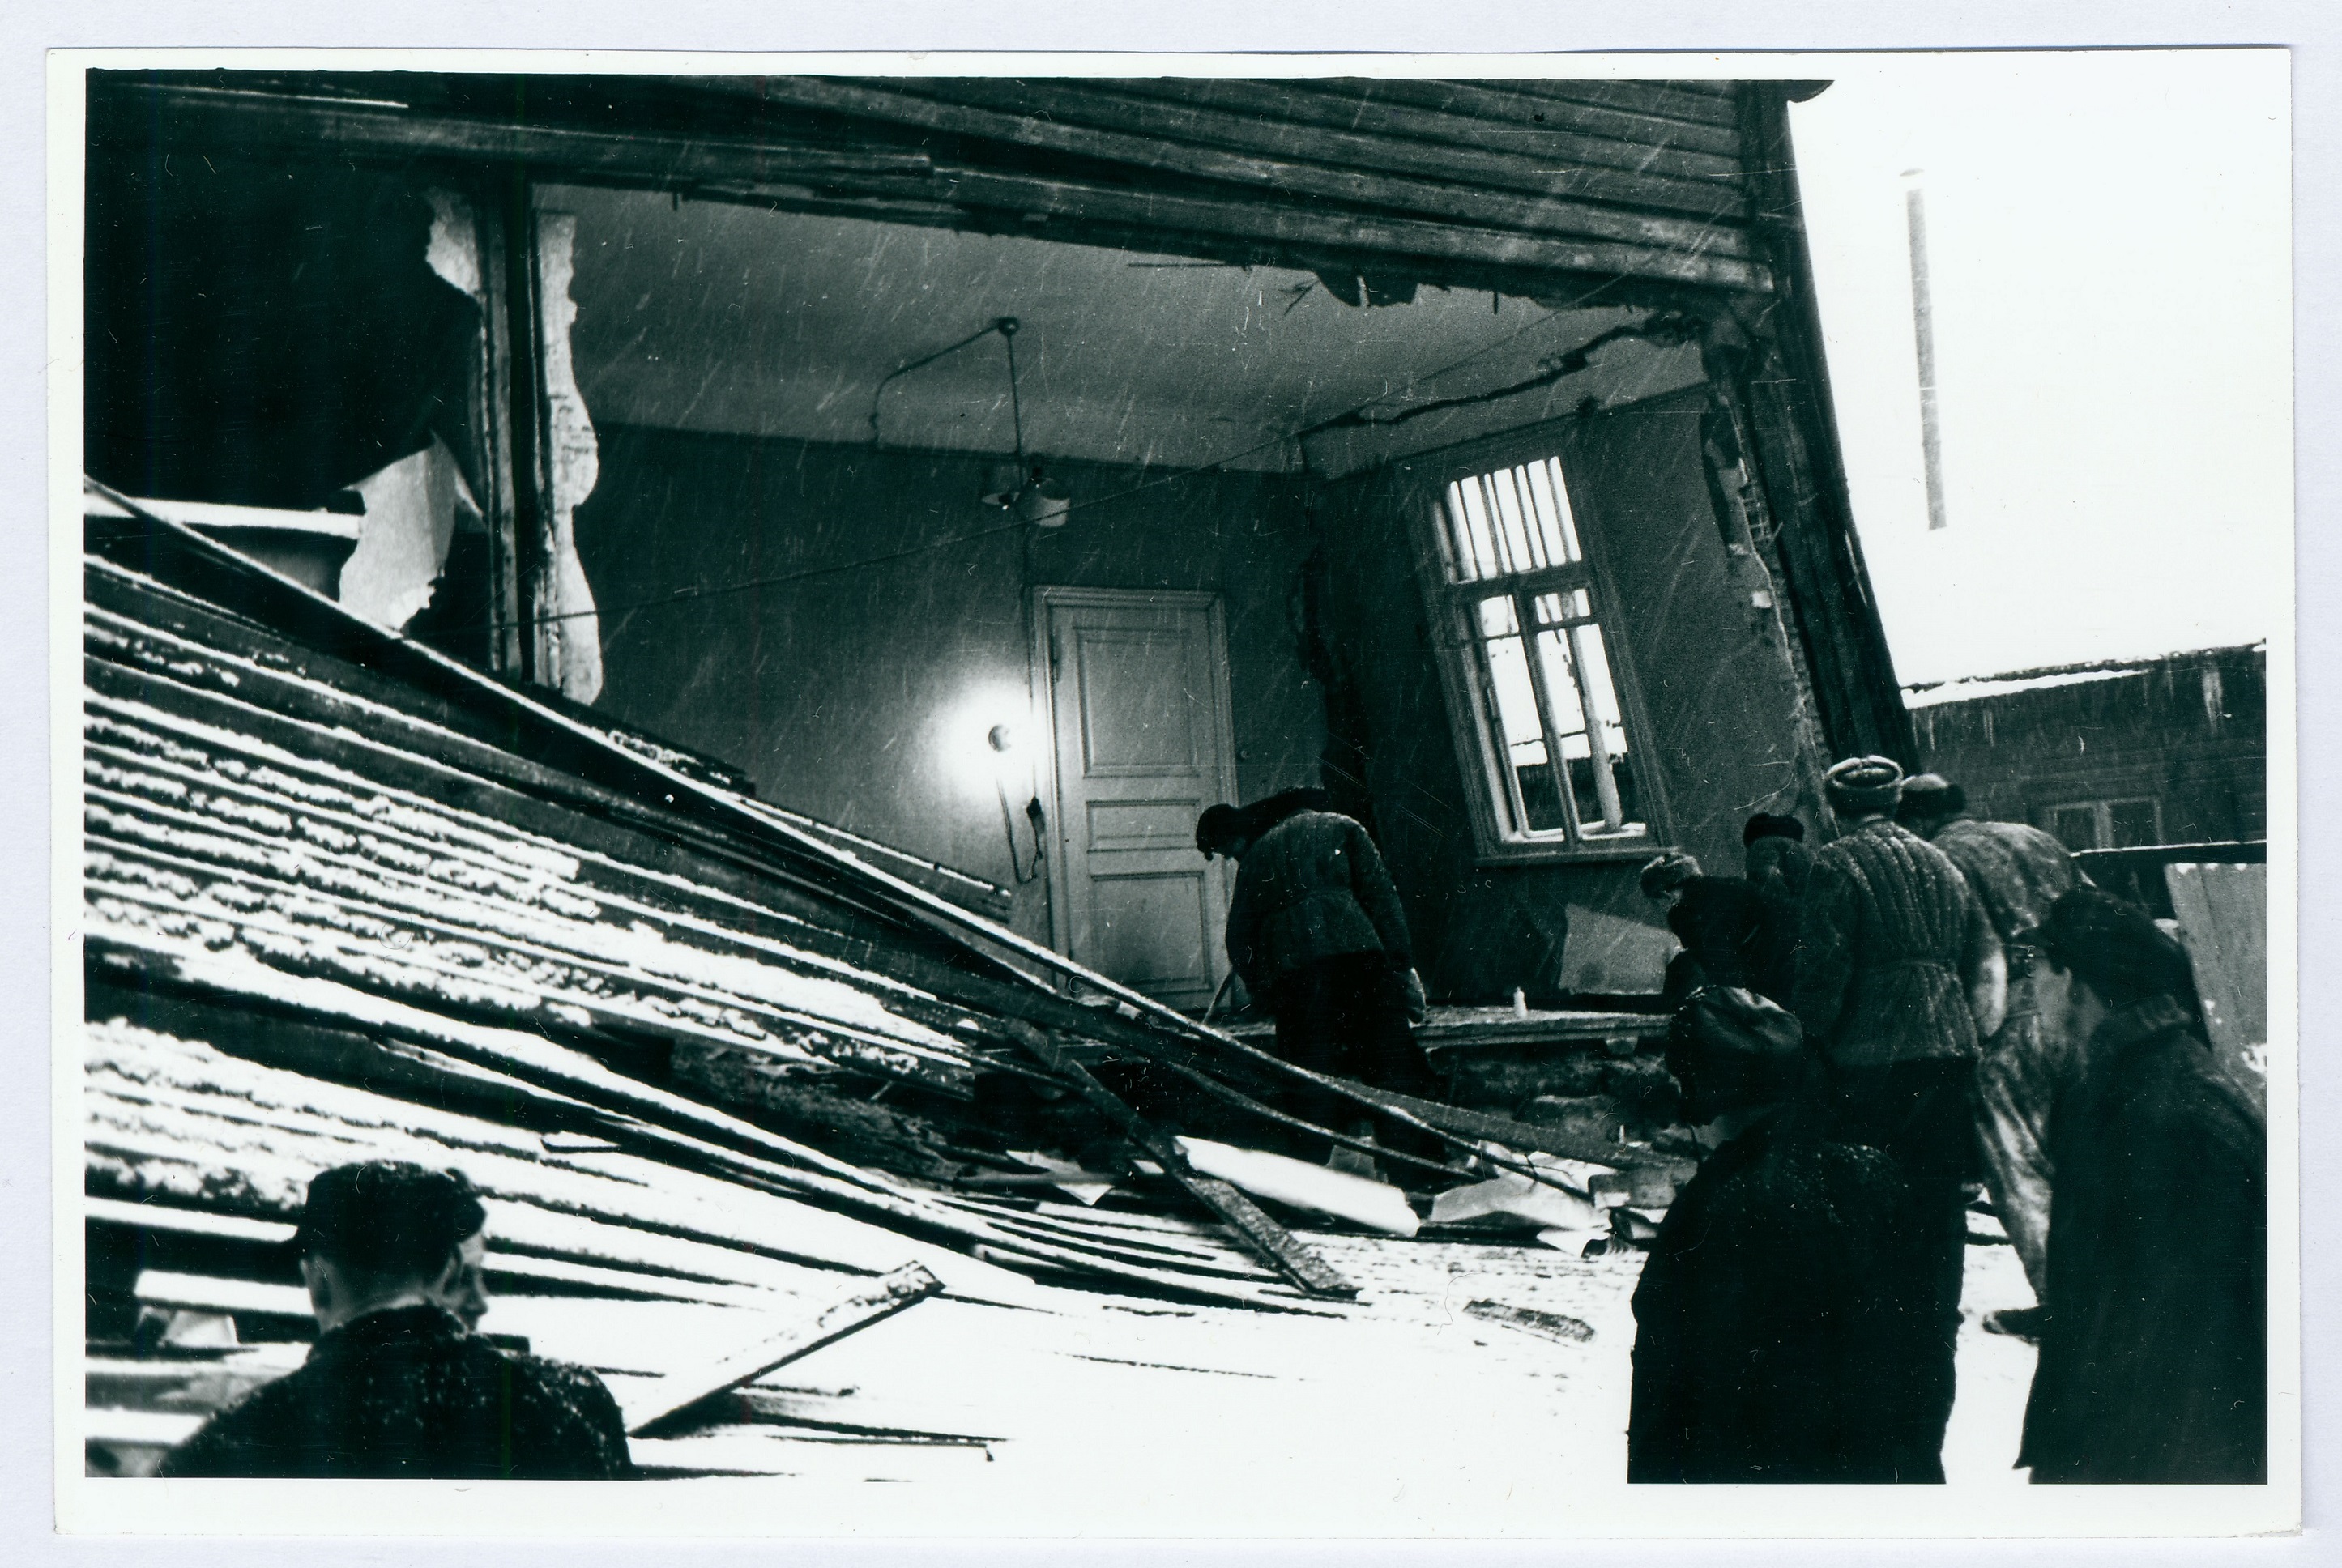 Atsetüleeni plahvatuse tagajärg elumajale 1960